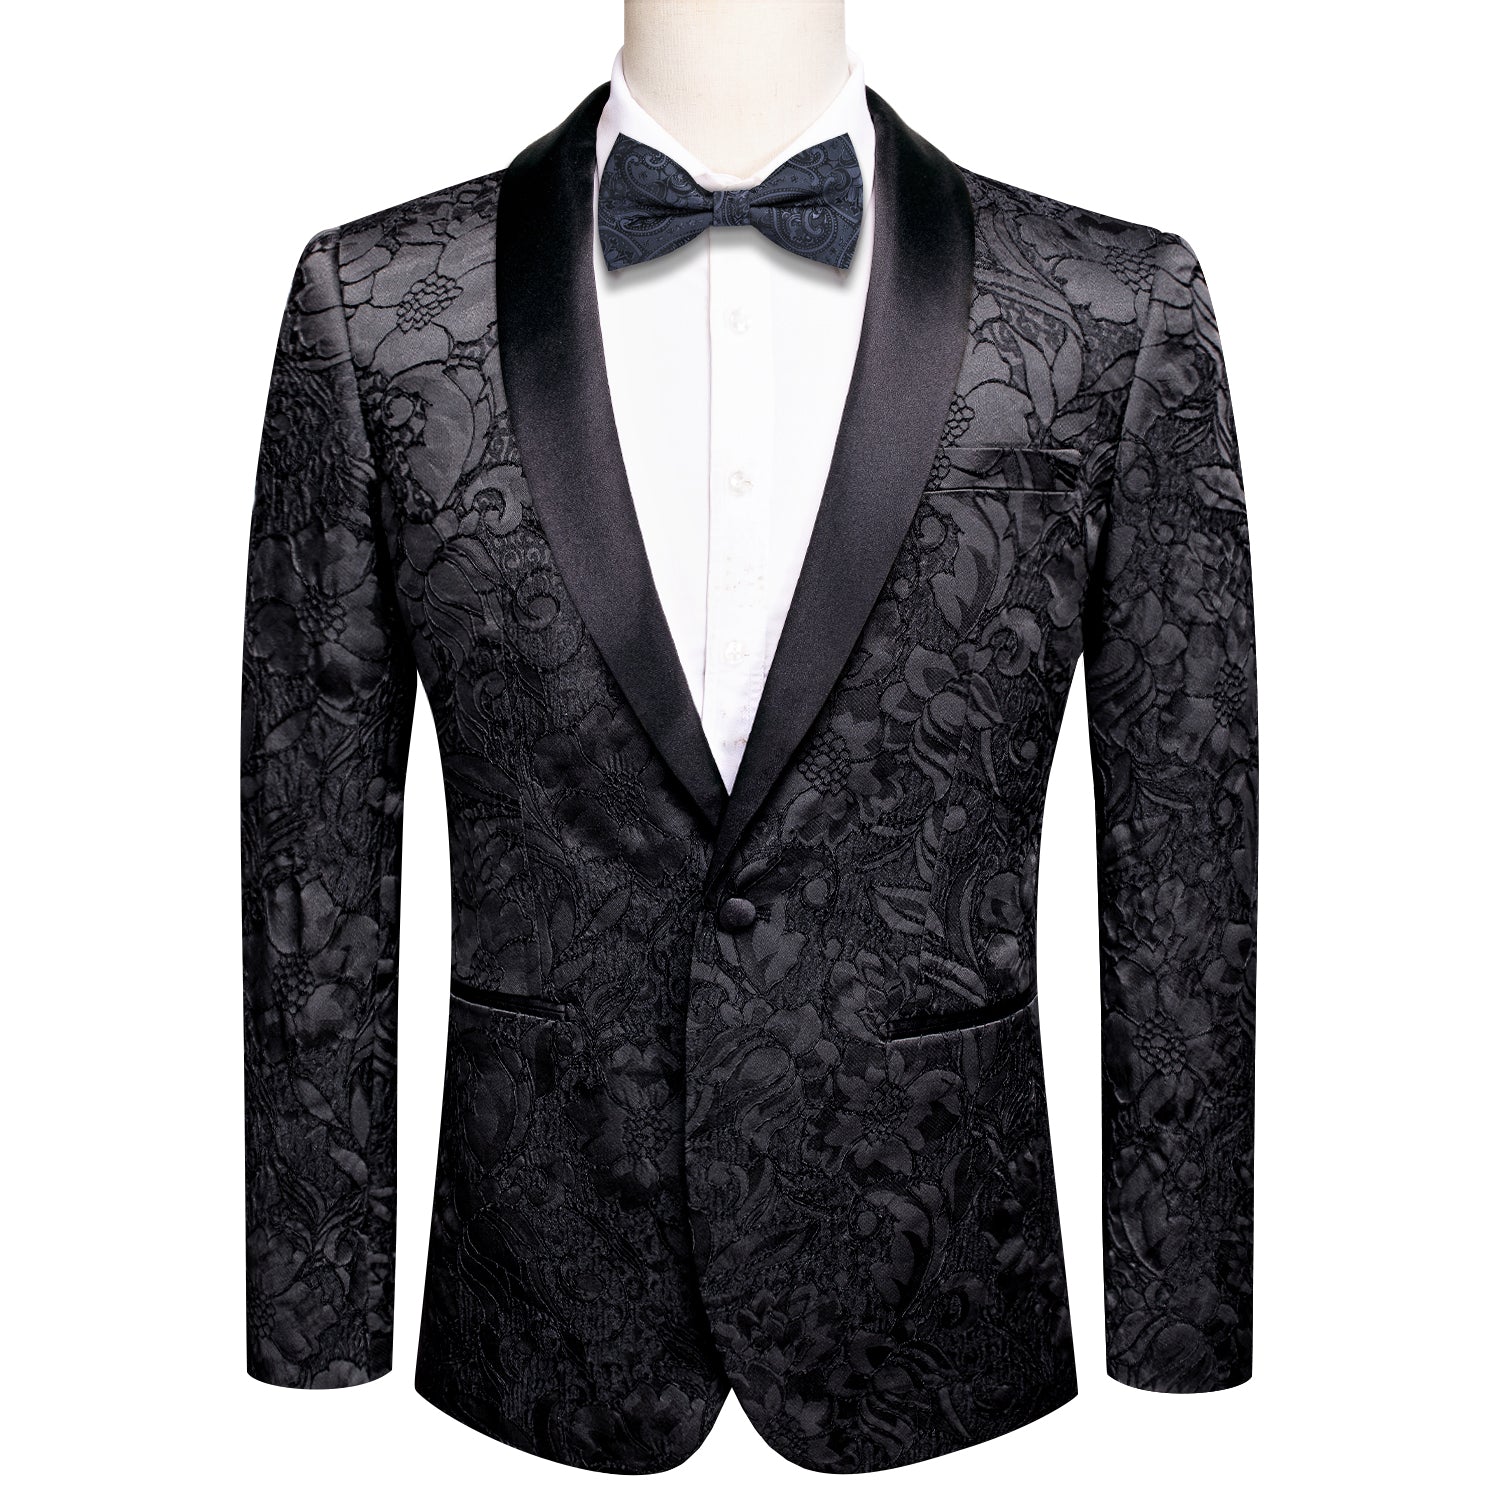 New Classic Black Floral Men's Suit Set